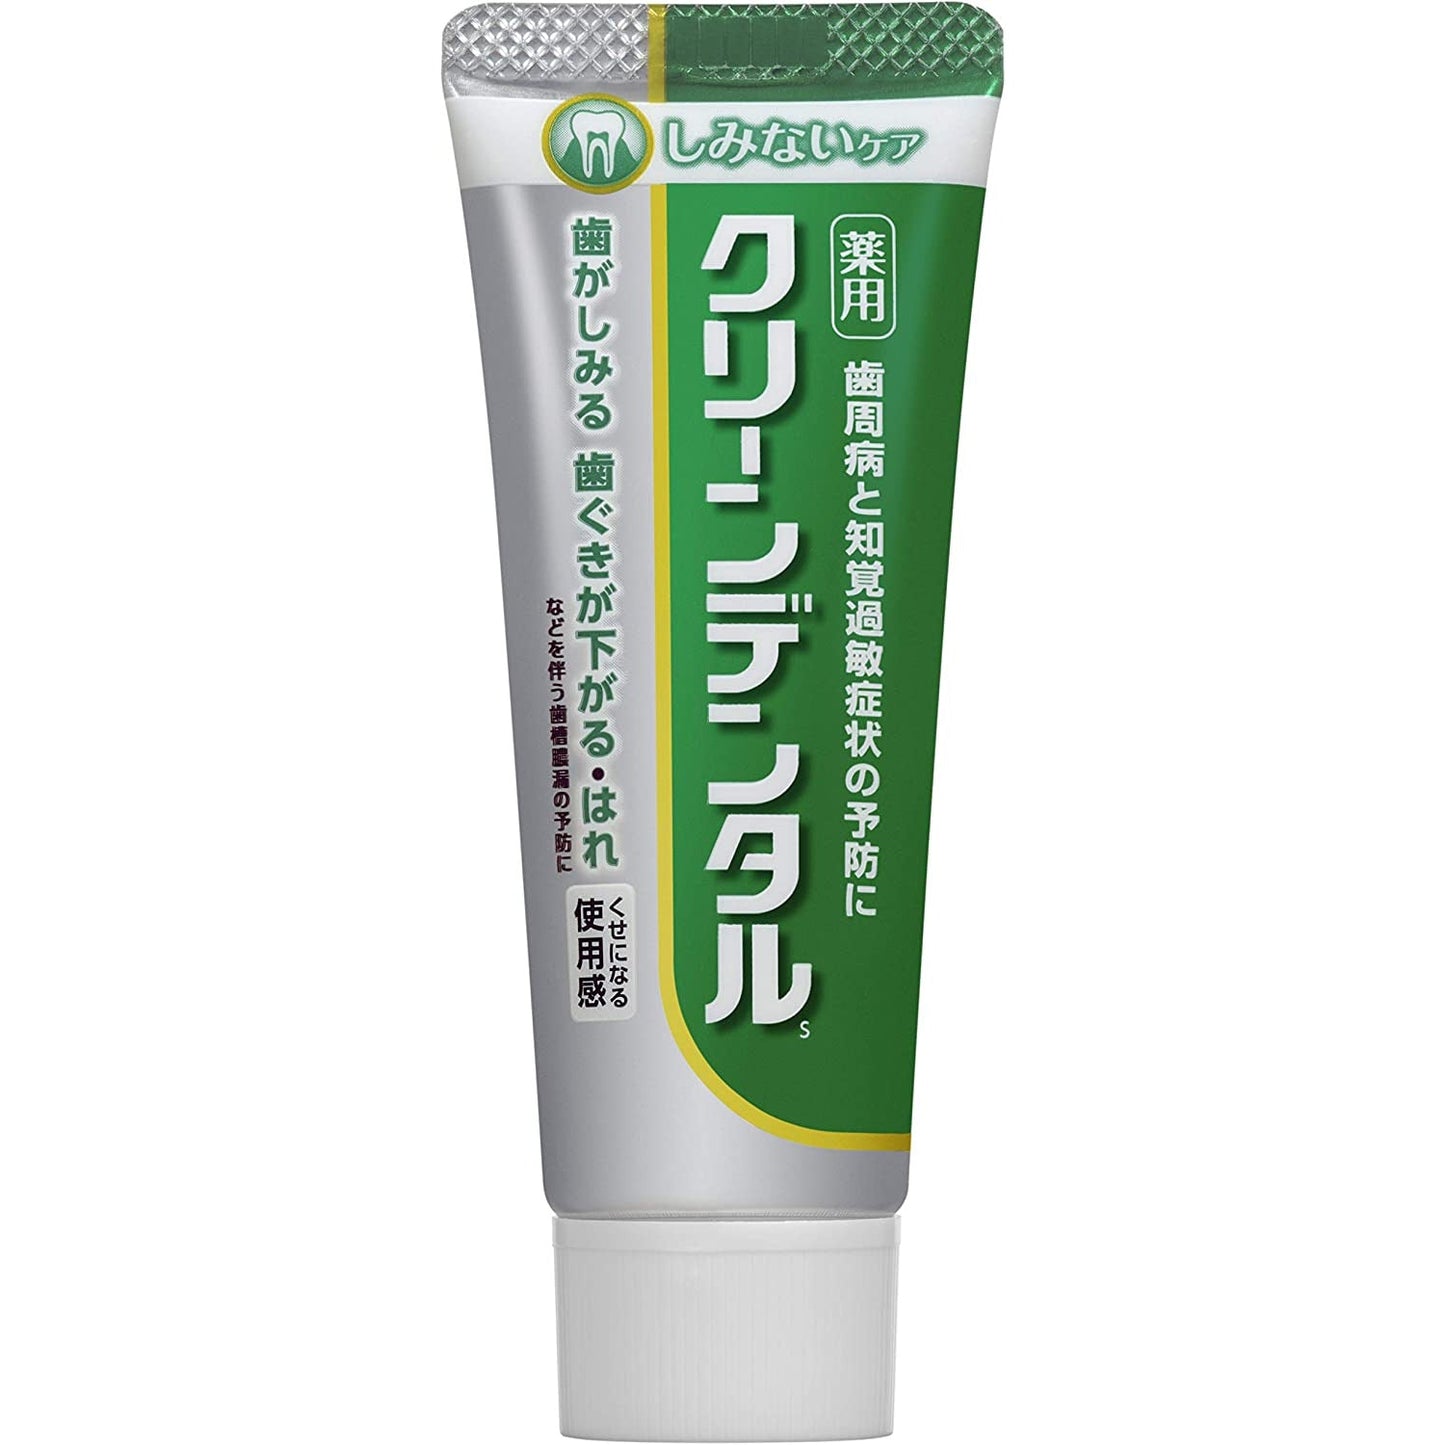 第一三共 Clean Dental 藥用牙膏 牙齦炎/牙槽膿漏 - CosmeBear小熊日本藥妝For台灣